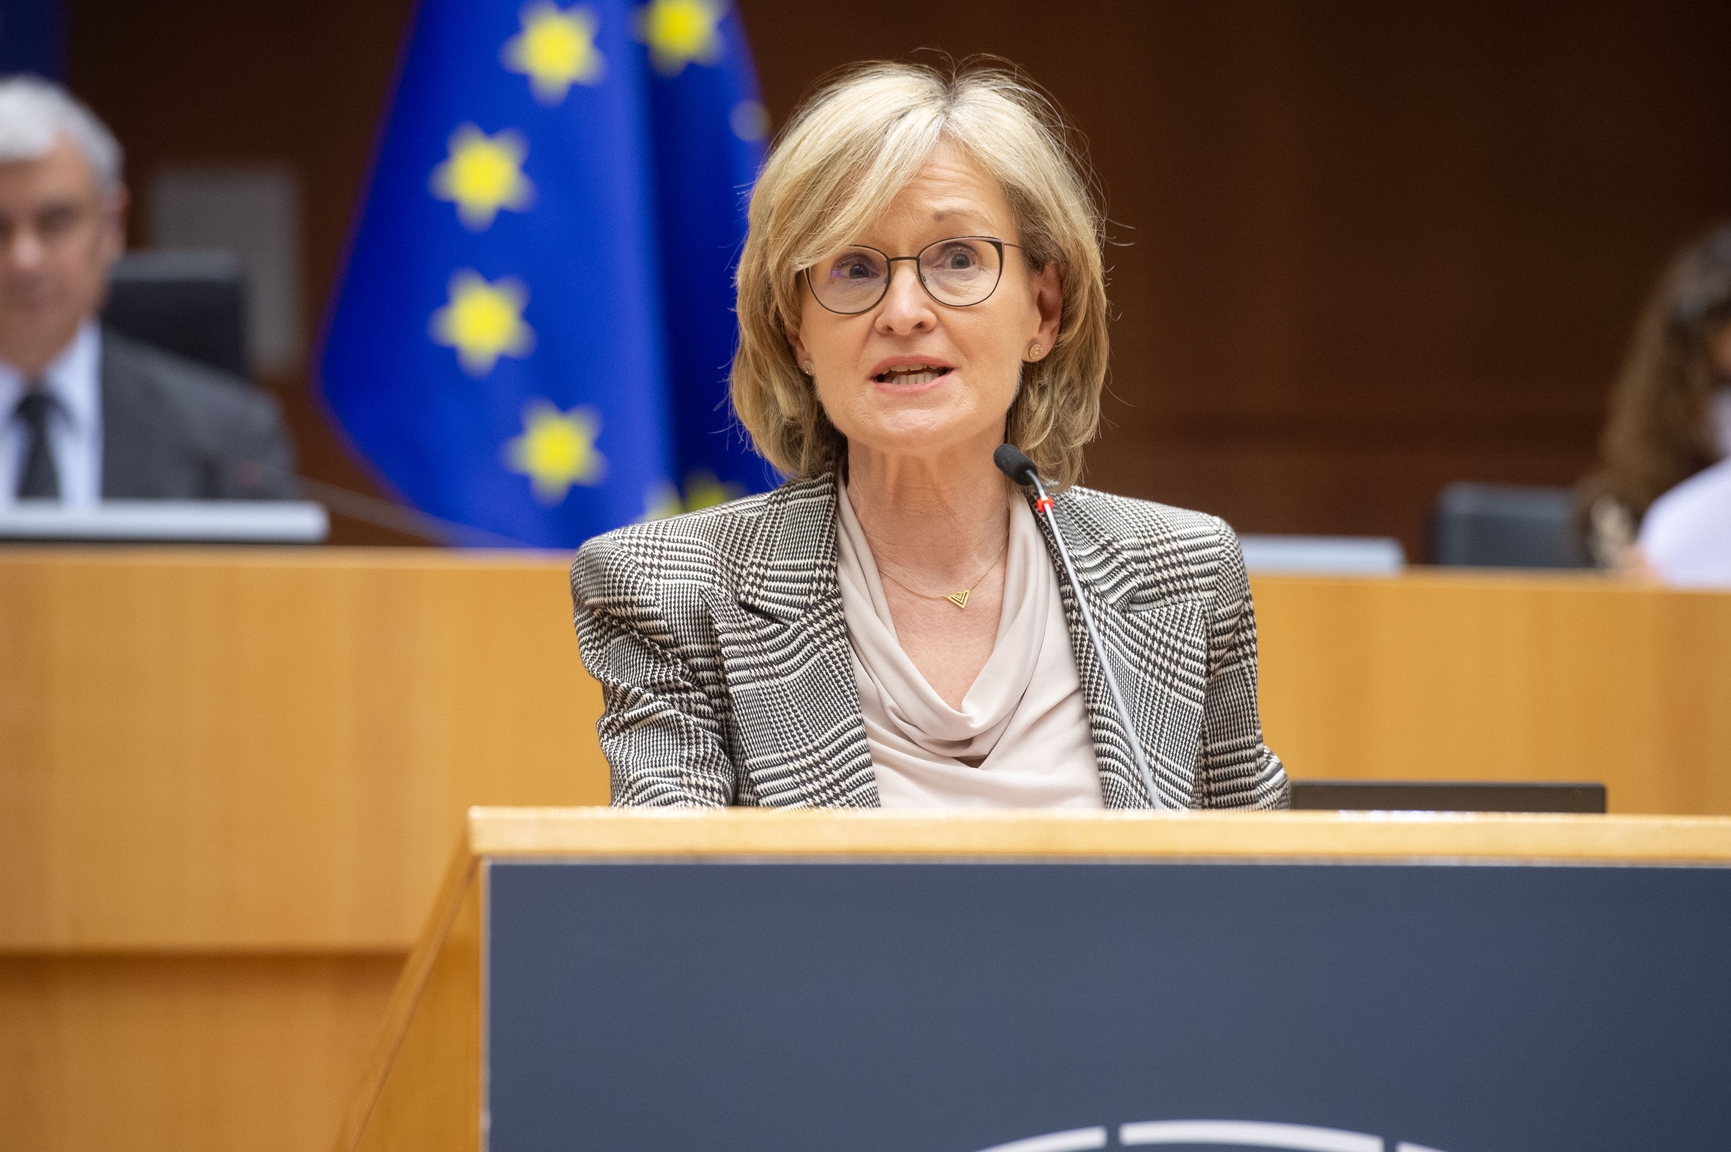 McGuinness_EU_Commissioner_picby_Jan_VAN_DE_VEL_copyright_European_Union_2021_Source